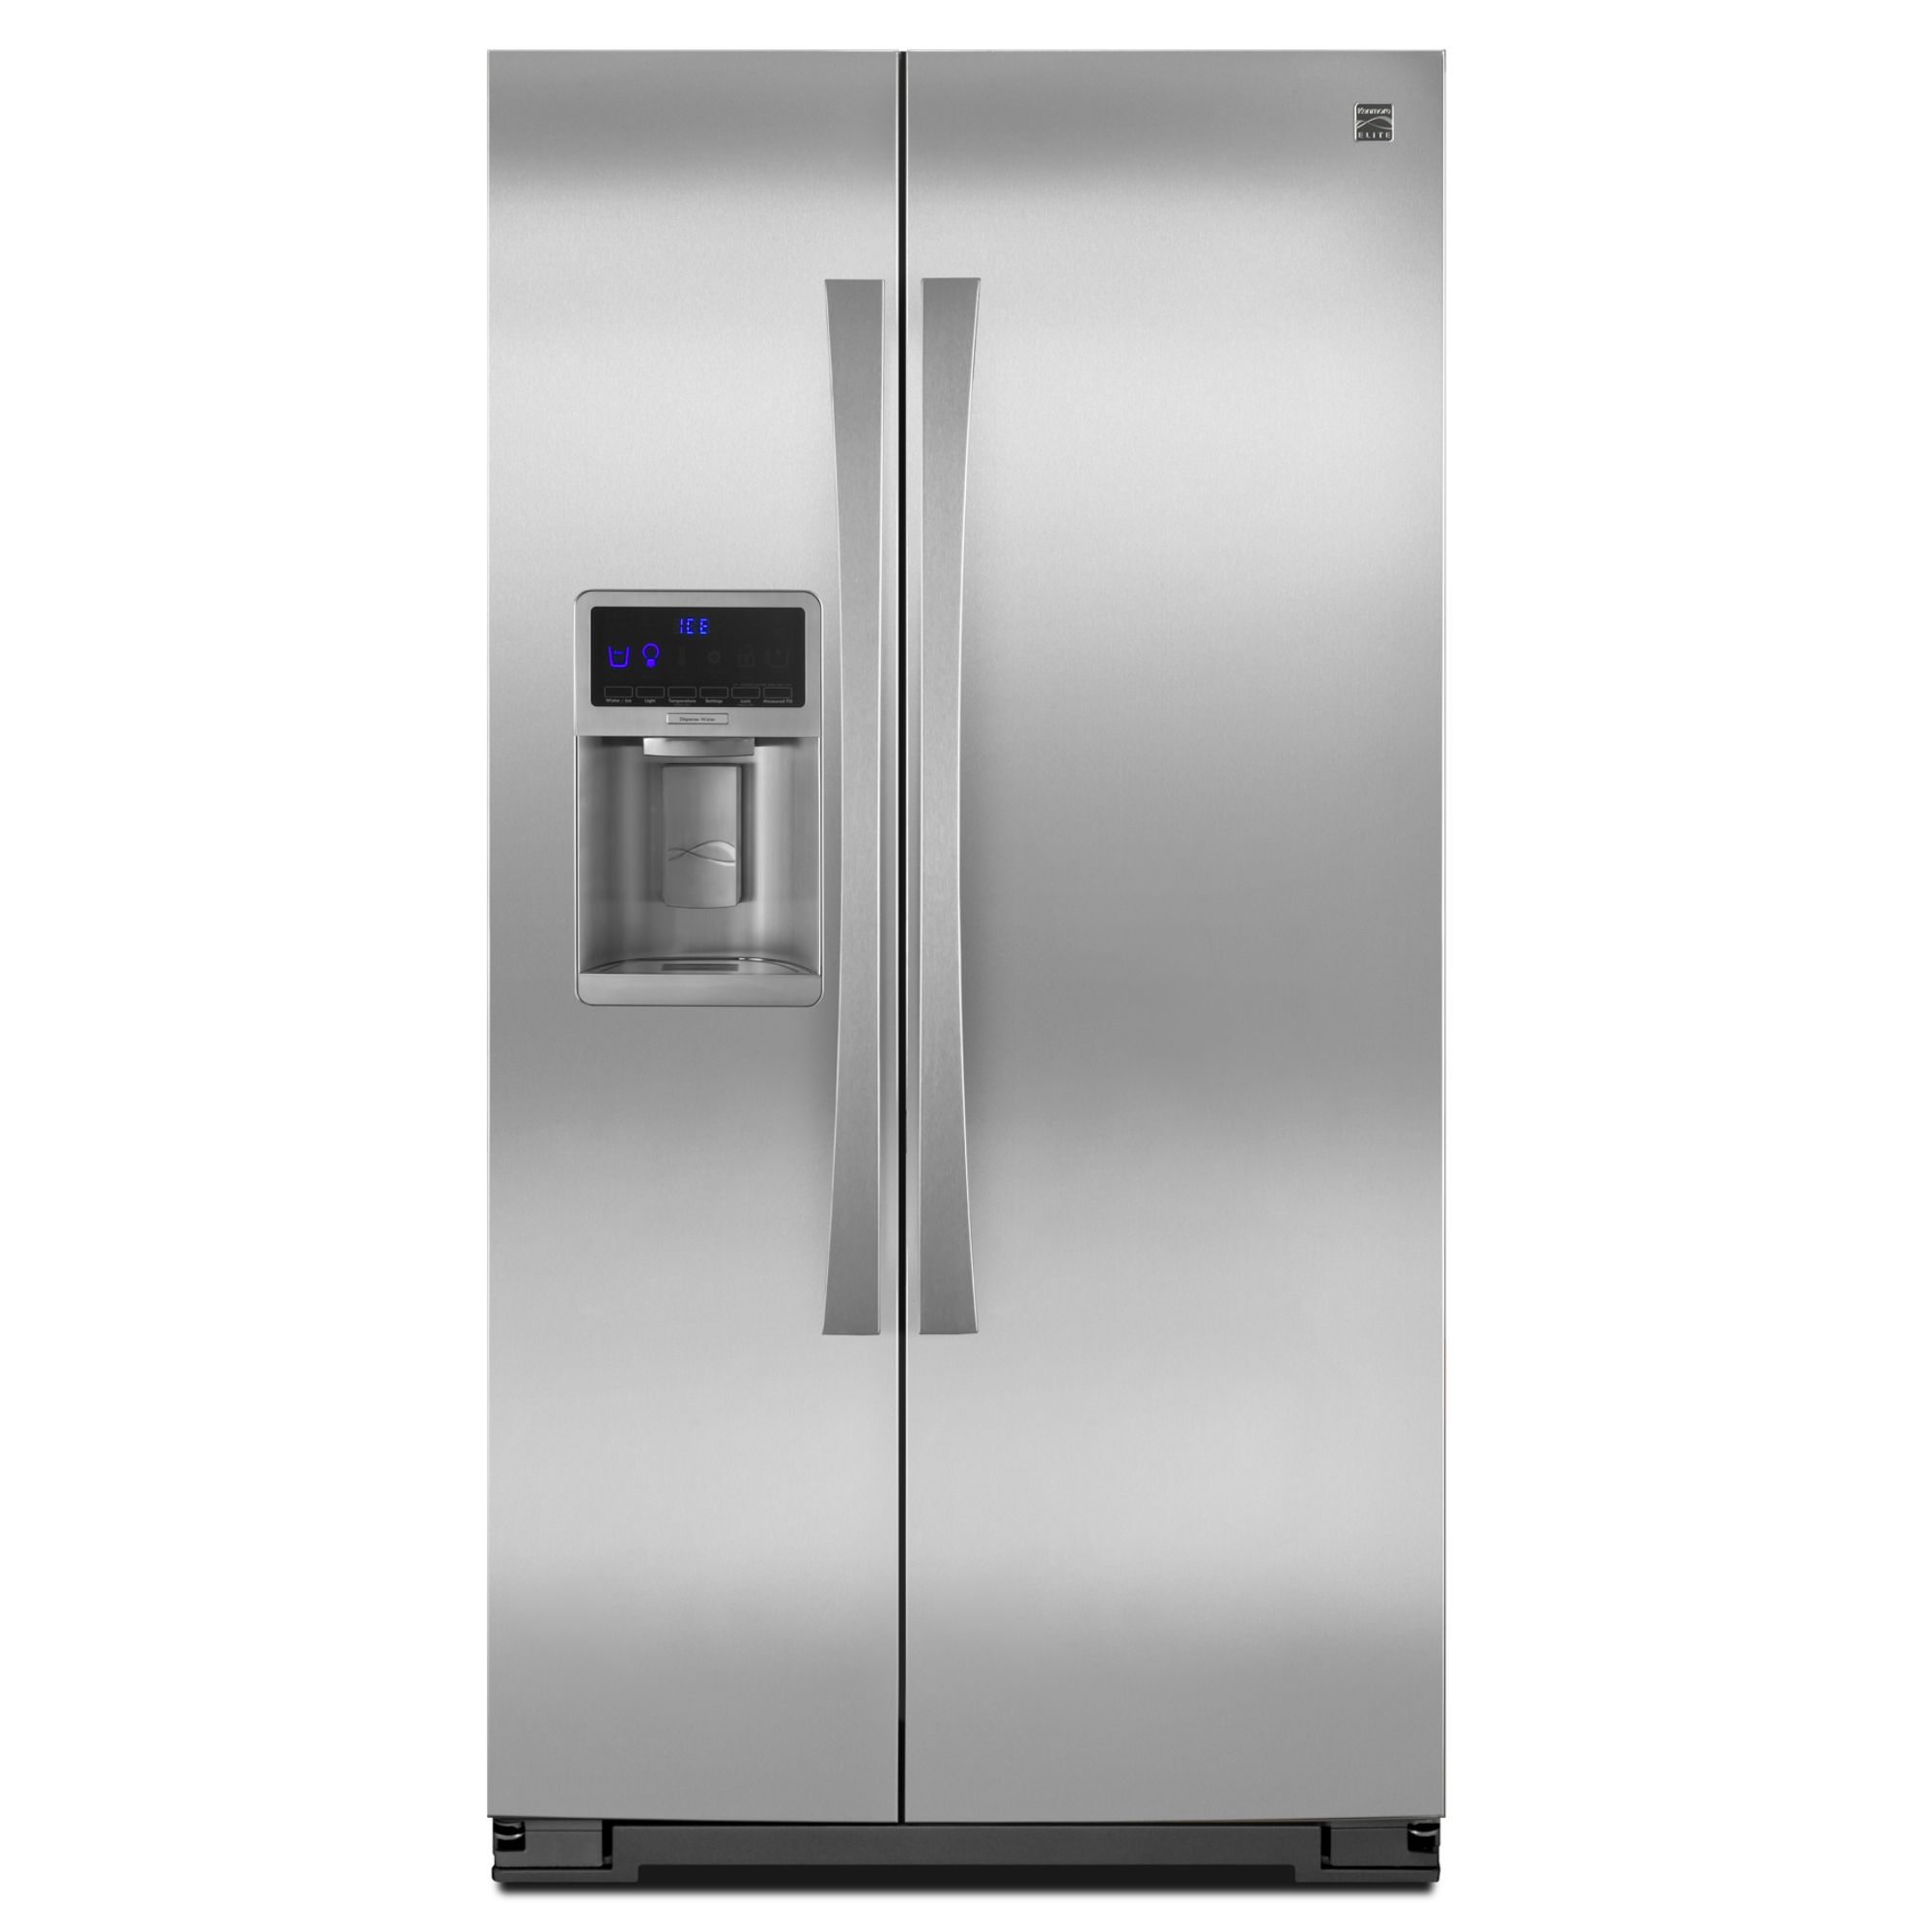 Kenmore Elite 29.2 cu. ft. Side-by-Side Refrigerator w/ Genius Cool Kenmore Elite Stainless Steel Refrigerator